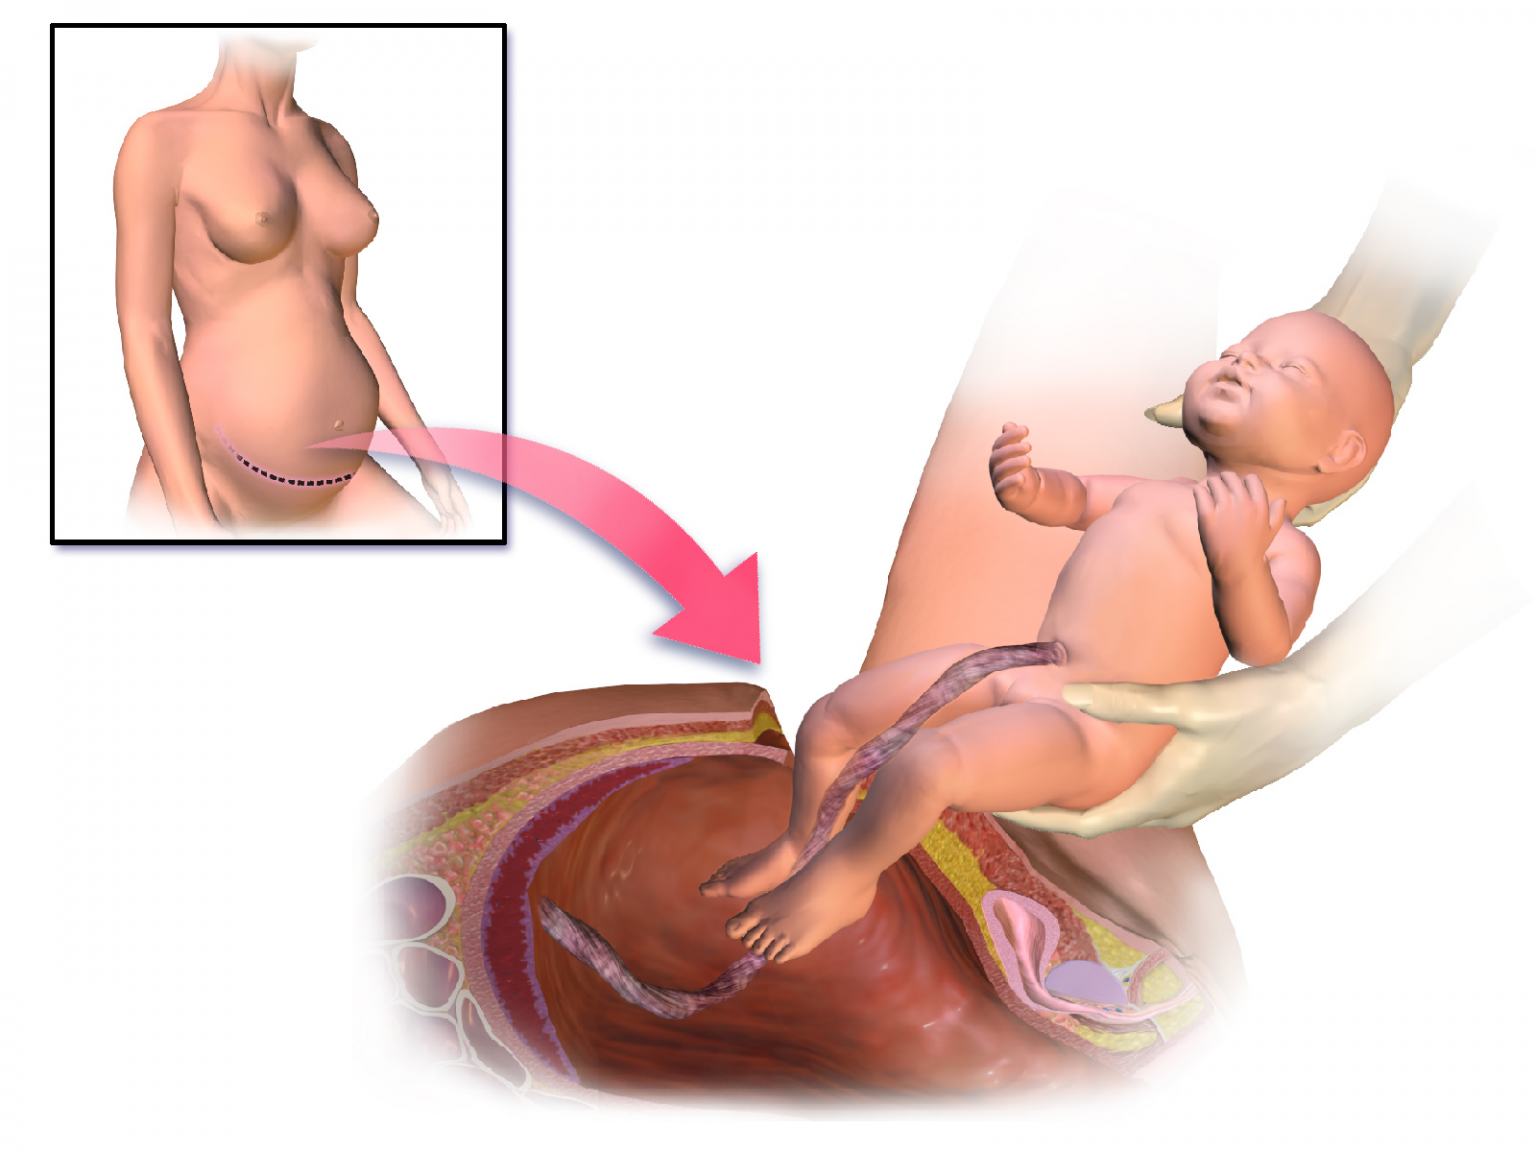 Забеременеть после родов форум. Рождение ребенка кесарево сечение. Родоразрешение кесарево сечение. Разрез после кесарева сечения.